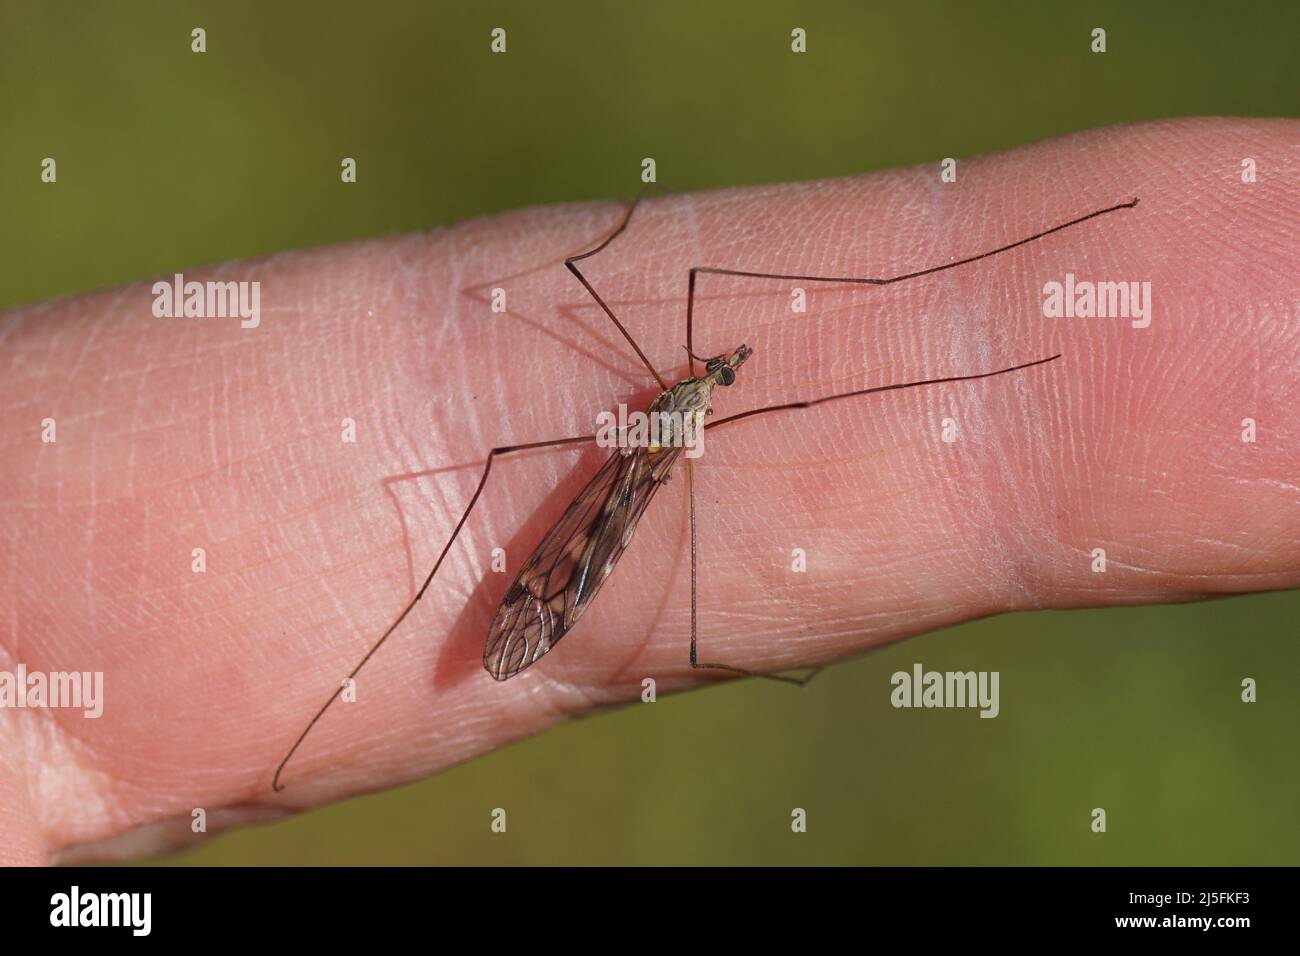 Männliche Kranichfliege Tipula rufina ruht auf einem Finger. Nicht beißend!, gefaltete Flügel. Familienkrane fliegen (Tipulidae). Frühling, holländischer Garten, Niederlande. Stockfoto